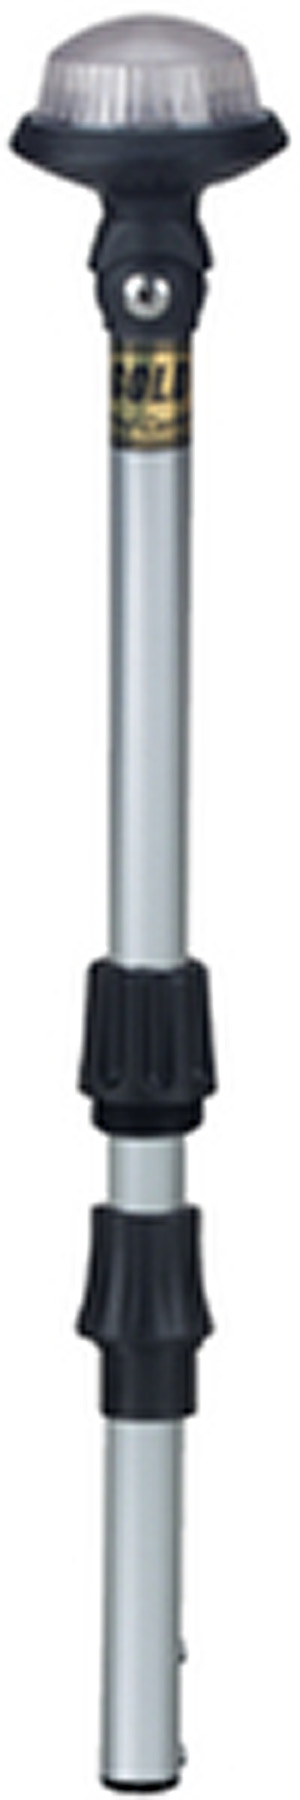 Pole Light-42" Adjustable Hea"